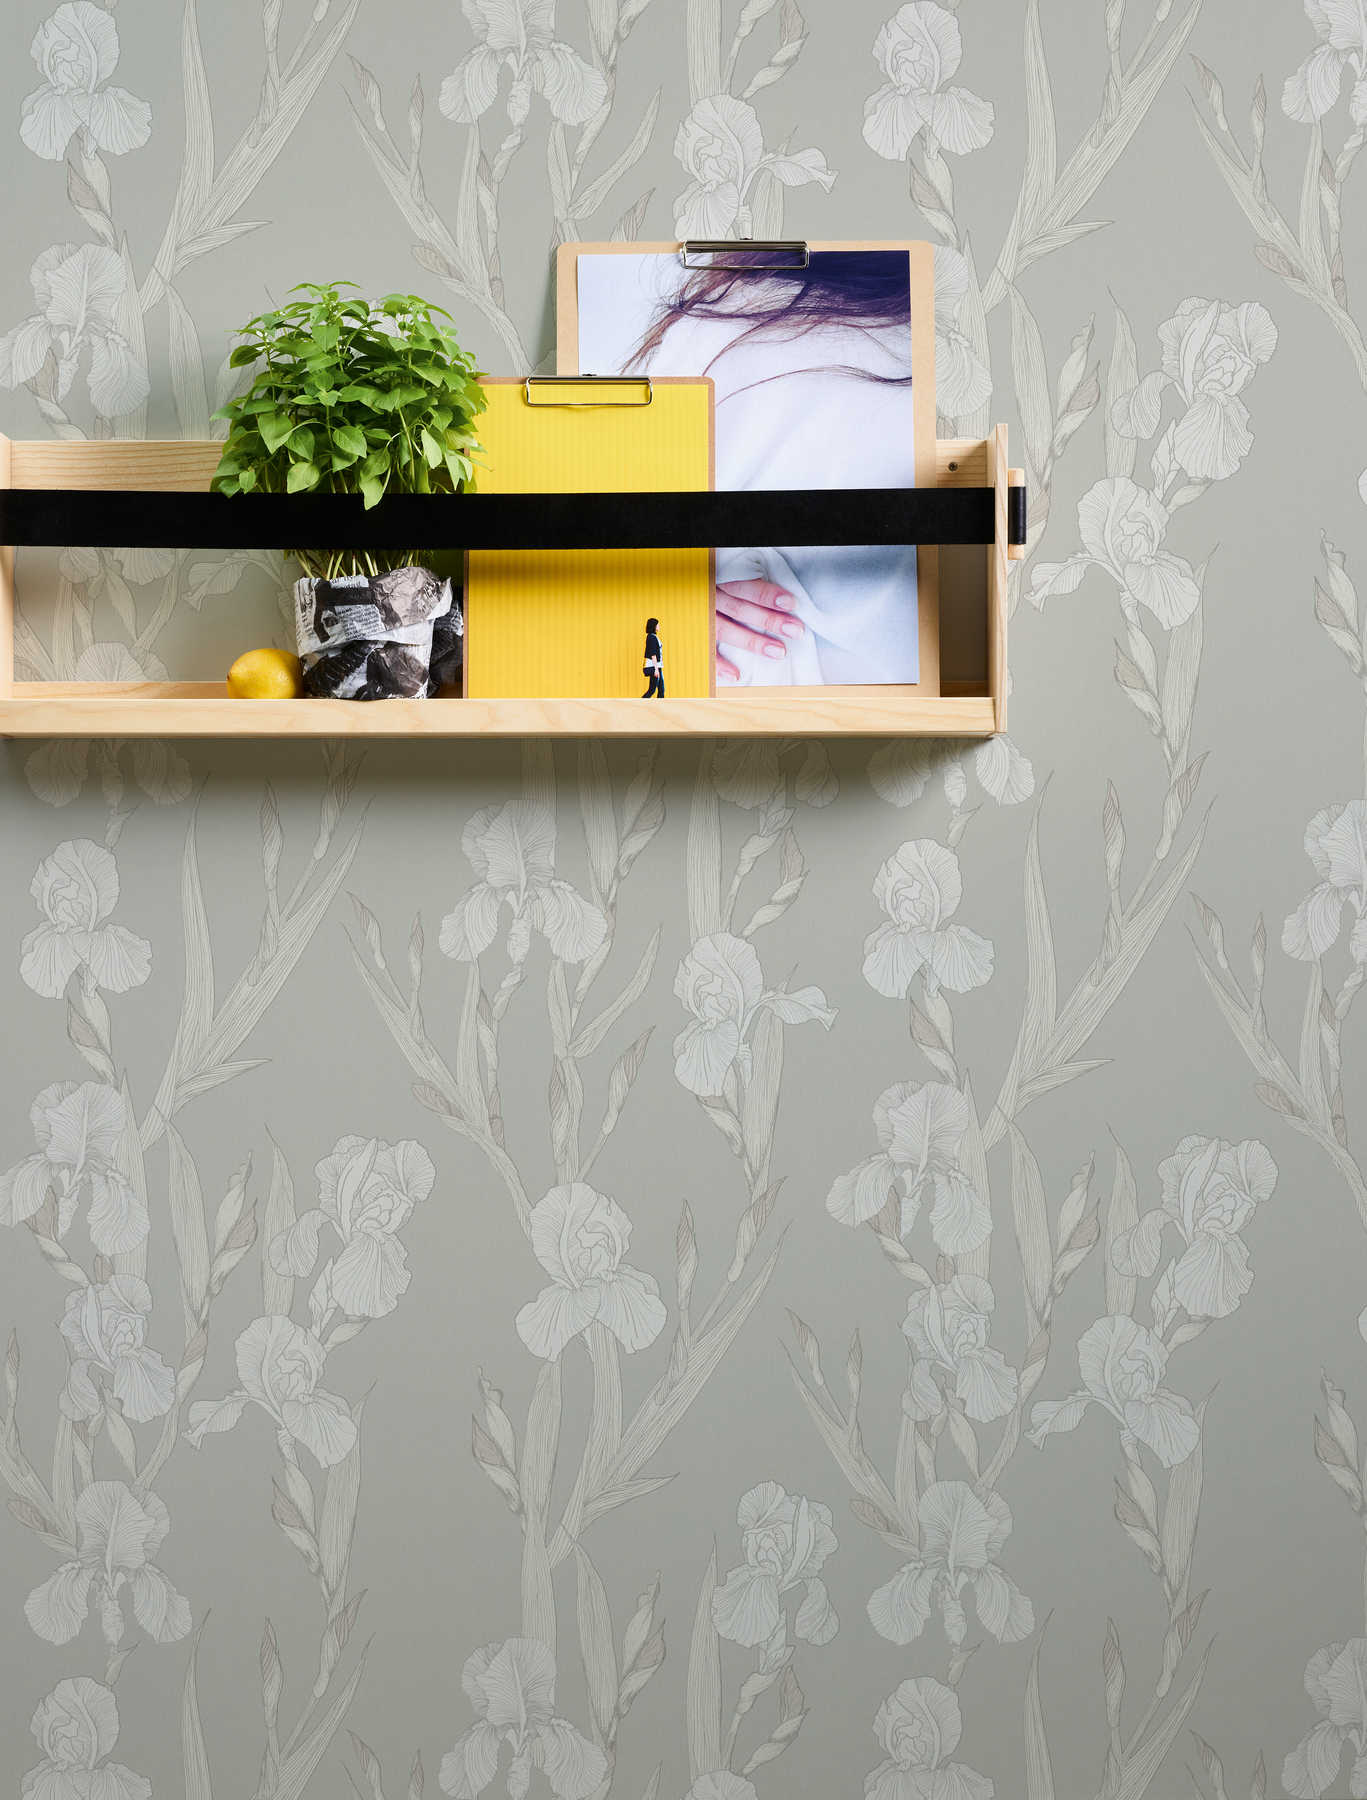             Floral wallpaper stylized, flower tendrils & modern design - grey, white
        